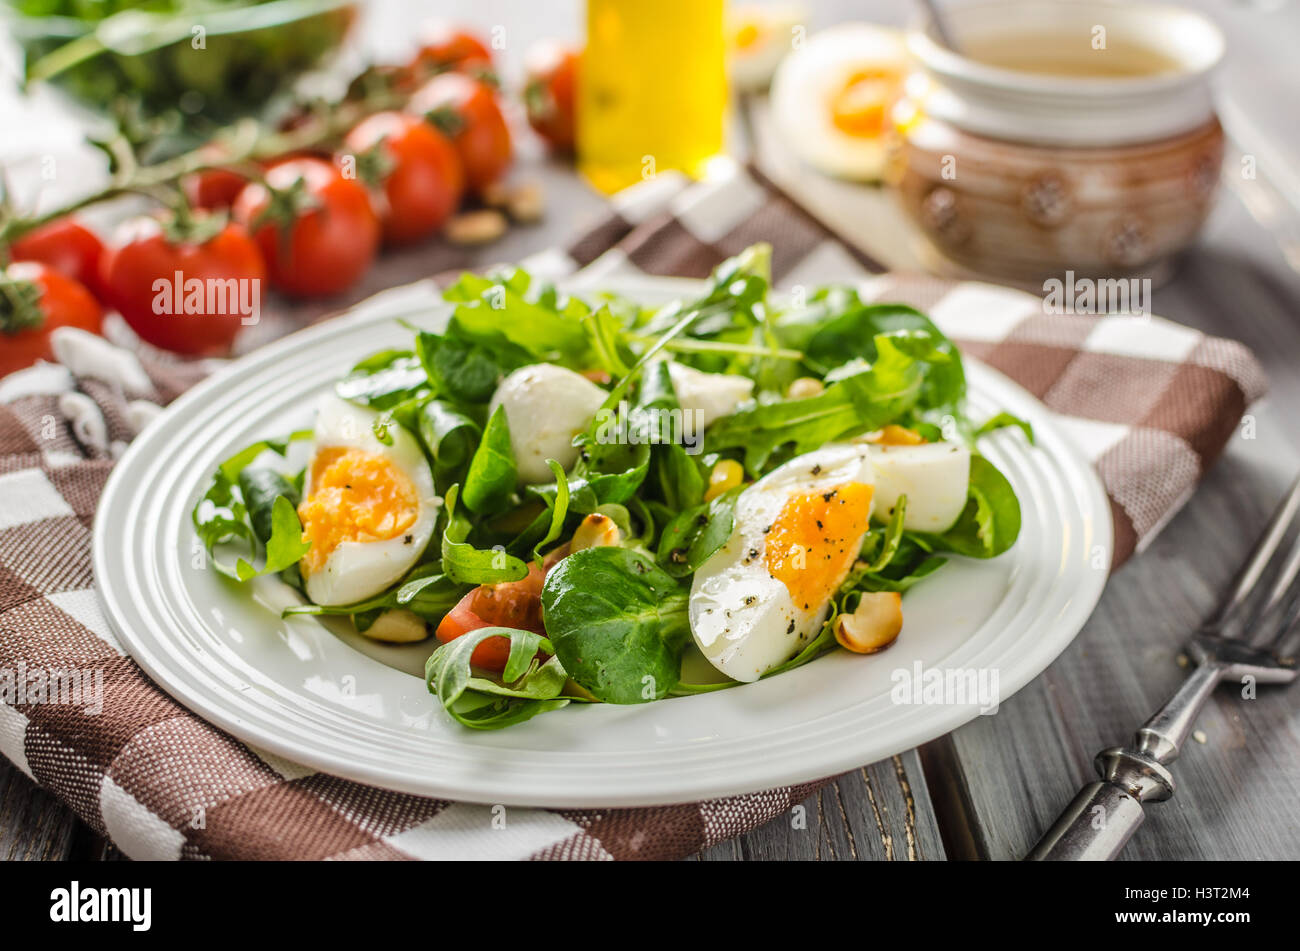 Салат с овощами и яйцом. Салат с яйцом. Овощной салат с яйцом. Салат с яйцами вареными. Салат из овощей с яйцом.